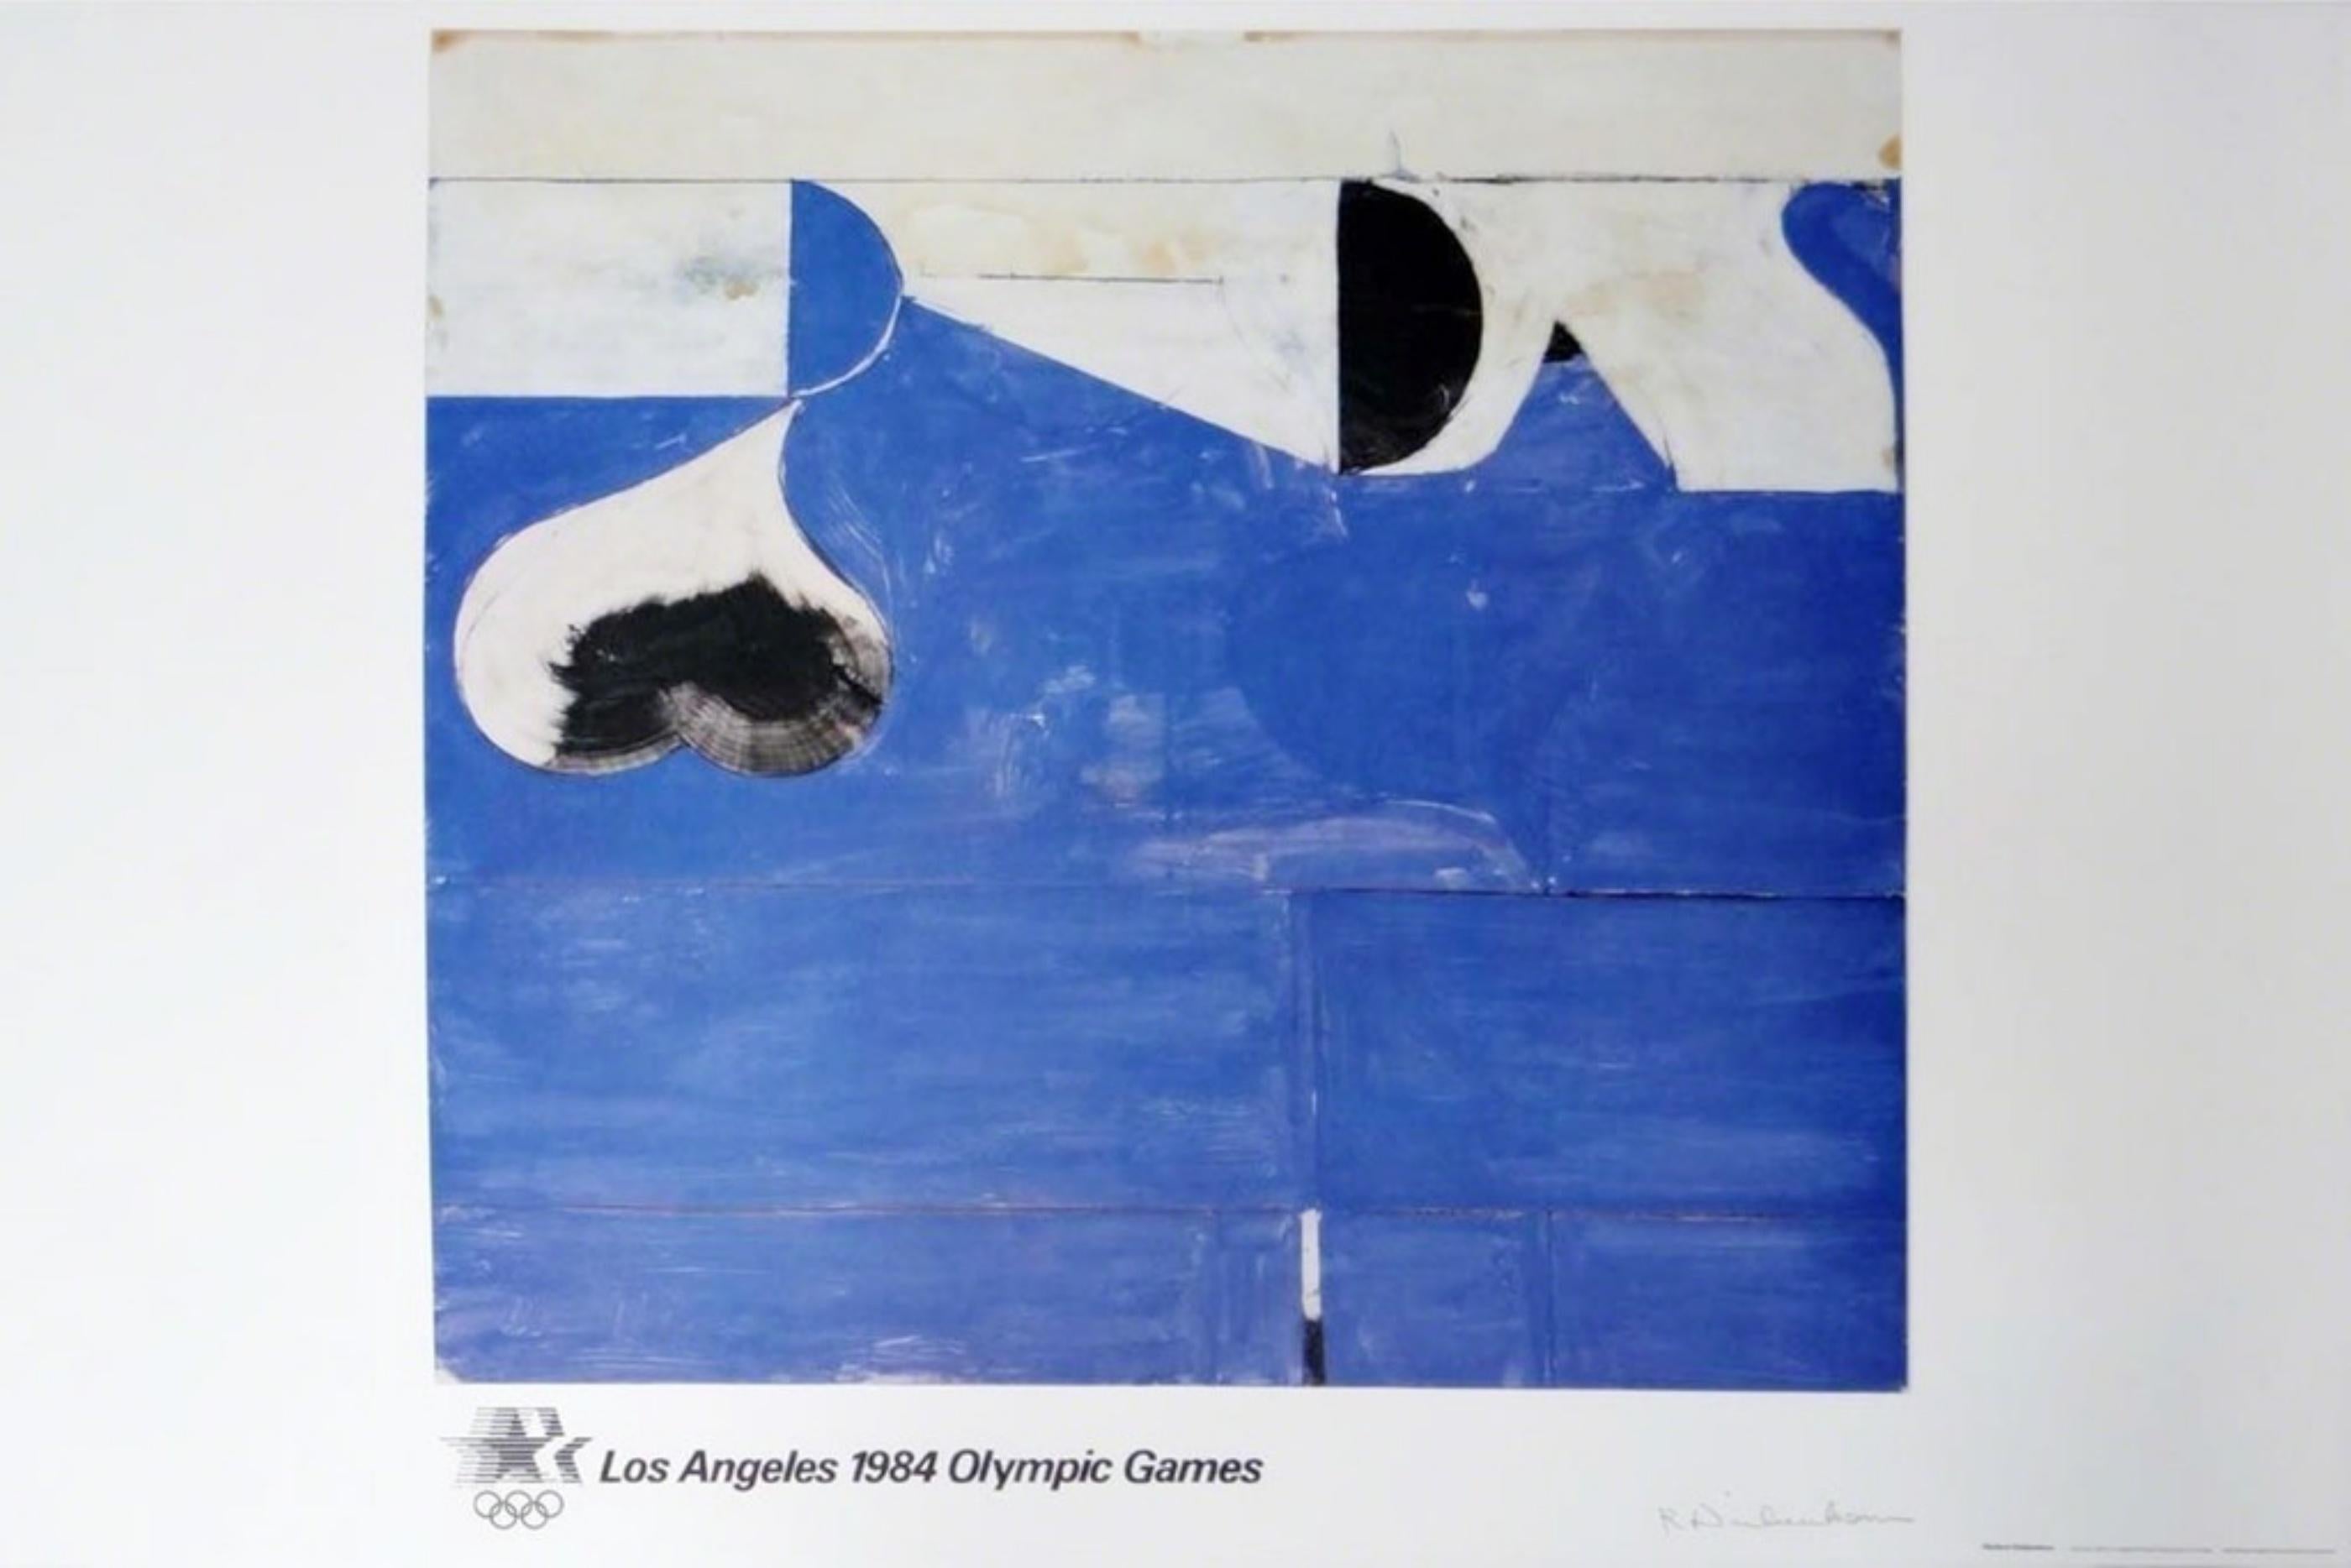 Abstract Print Richard Diebenkorn - Lithographie olympique, 1984 édition limitée signée édition limitée avec certificat d'authenticité